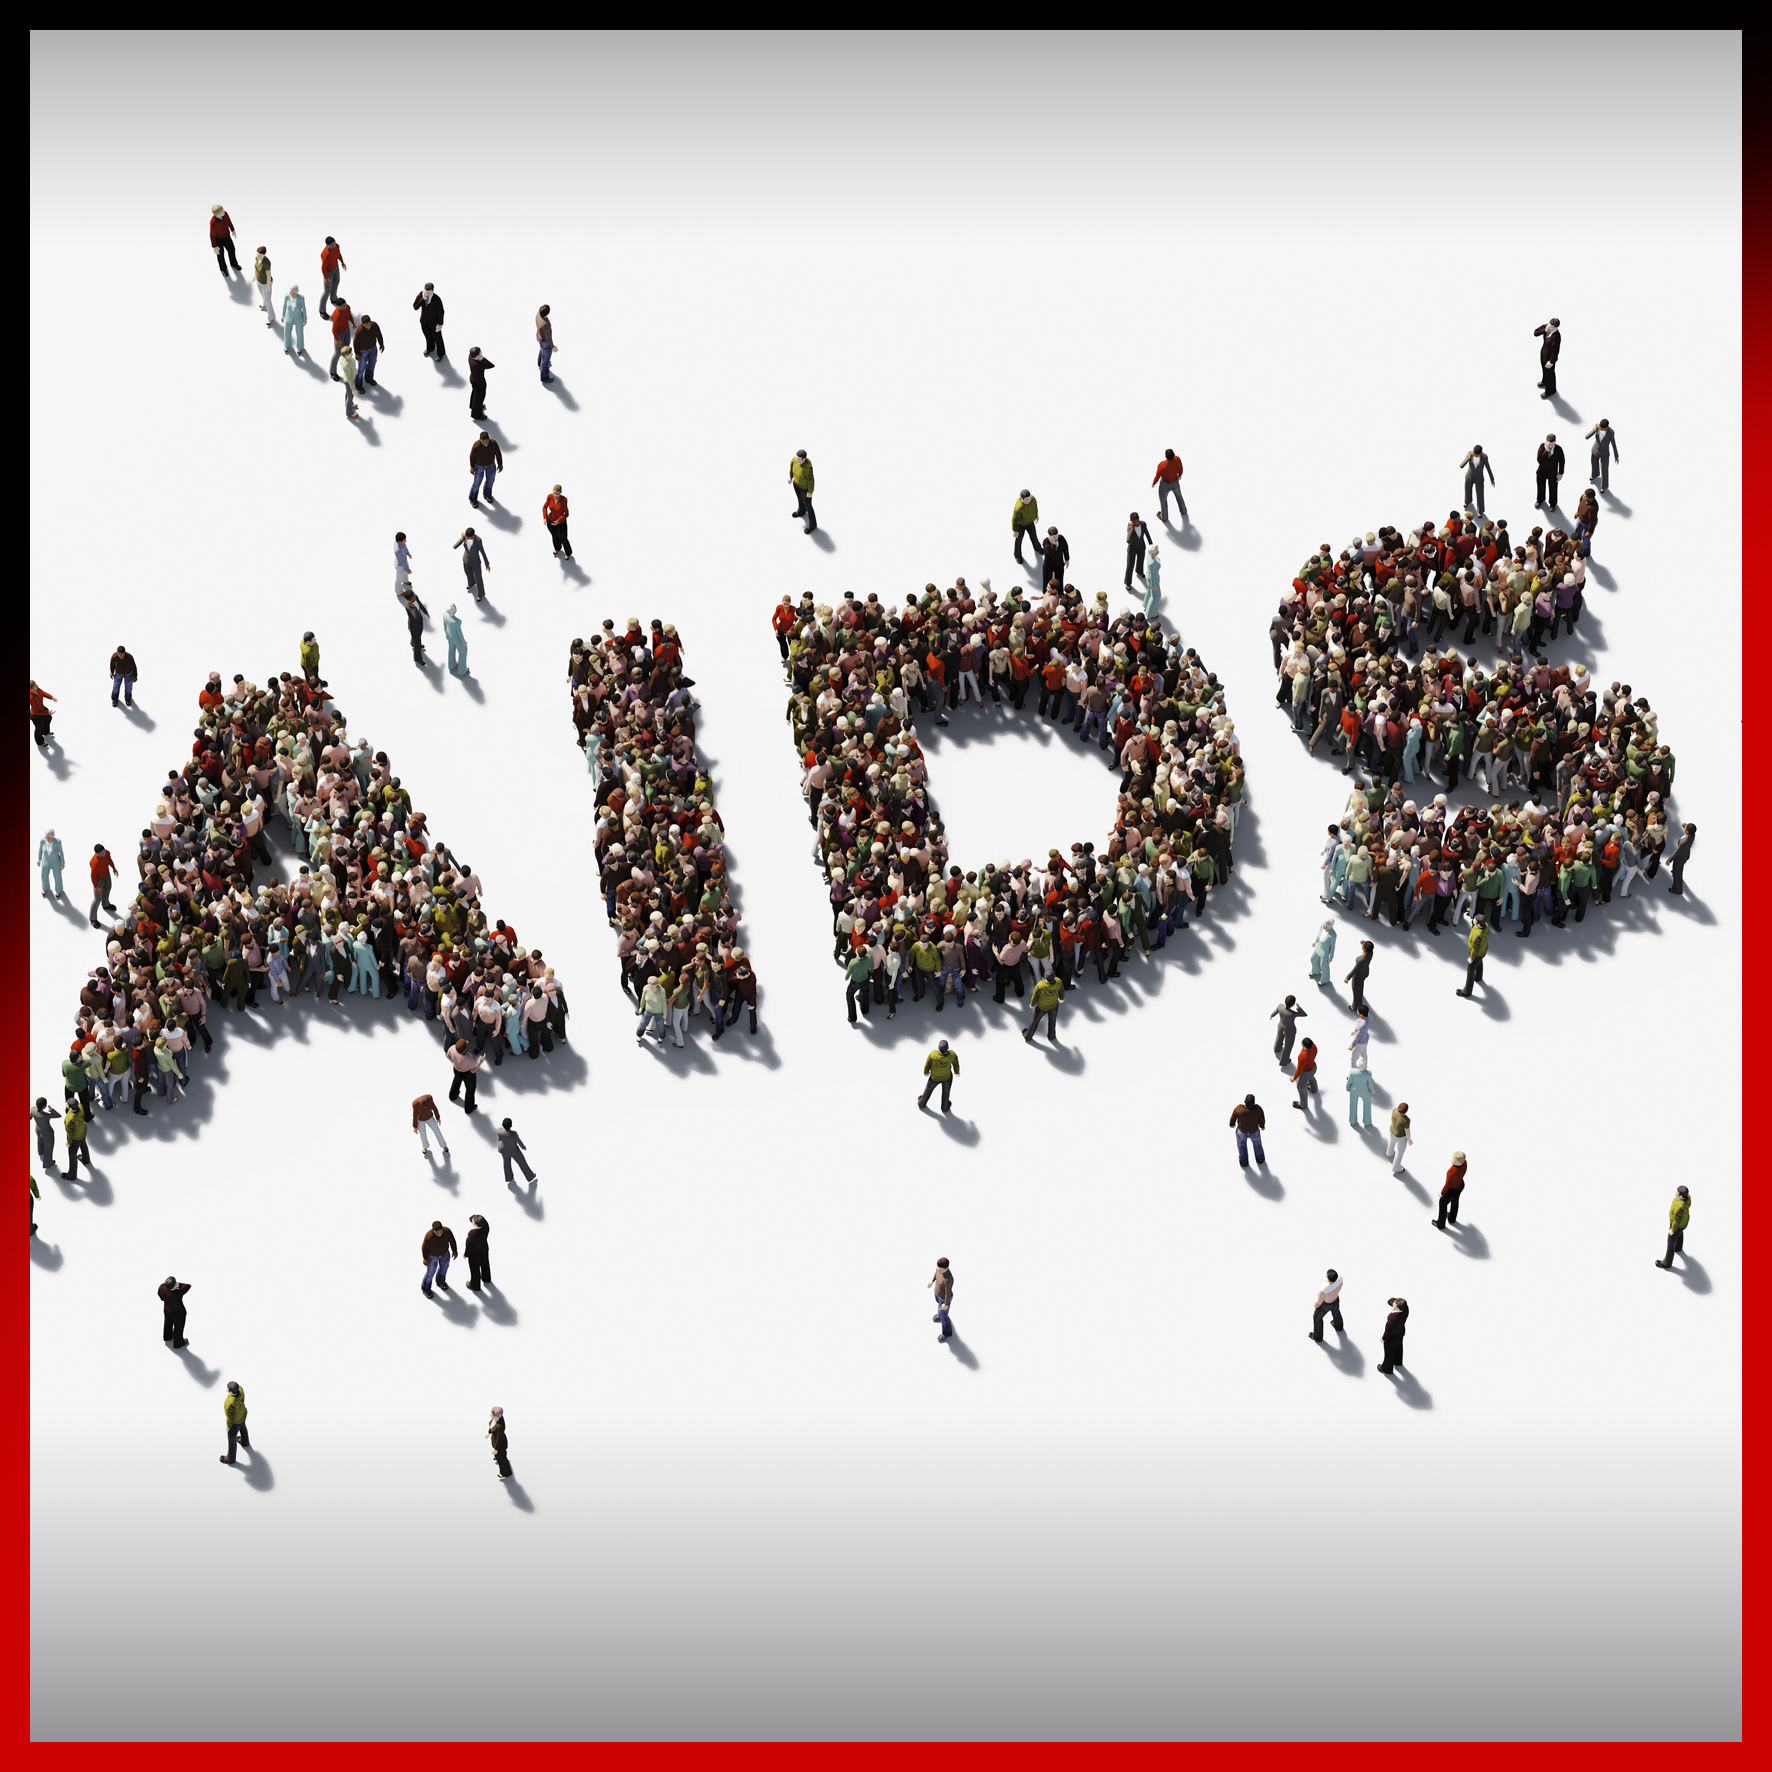 Κάποτε το AIDS: ο δημοσιογράφος Ξενοφών Μπρουντζάκης θυμάται την εποχή που “έσκασε” το AIDS στην Ελλάδα